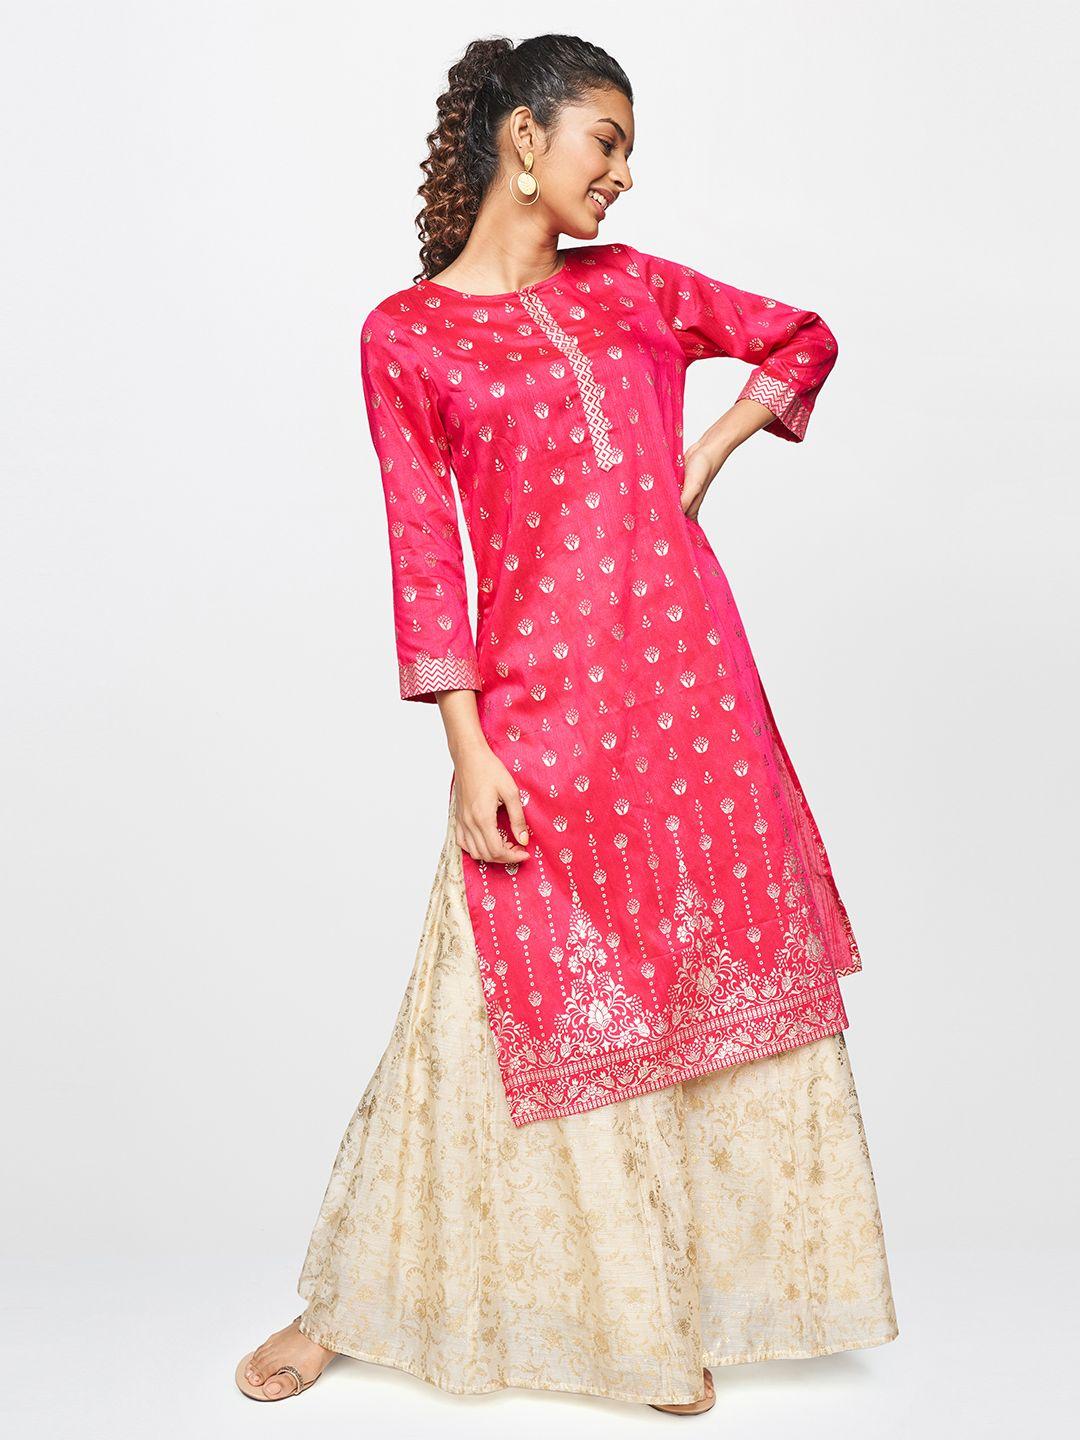 global-desi-women-pink-ethnic-motifs-printed-kurta